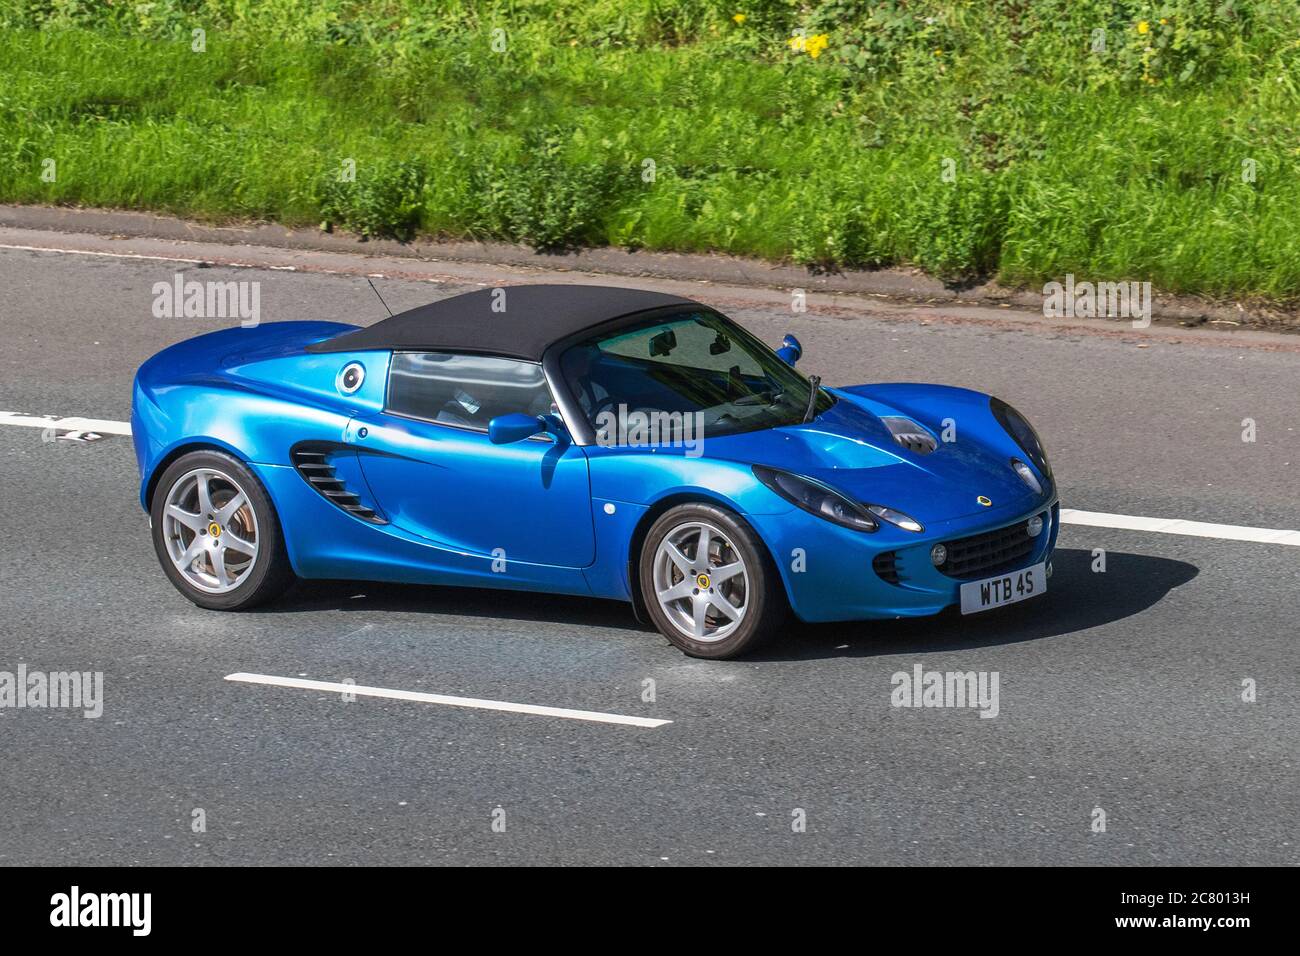 2011 Blue Lotus Elise Car Roadster benzina da 1794 cc, due posti, trazione posteriore, roadster a motore medio; veicoli in movimento per traffico veicolare, automobili che guidano su strade del Regno Unito, motori, motori sulla rete autostradale M6. Foto Stock